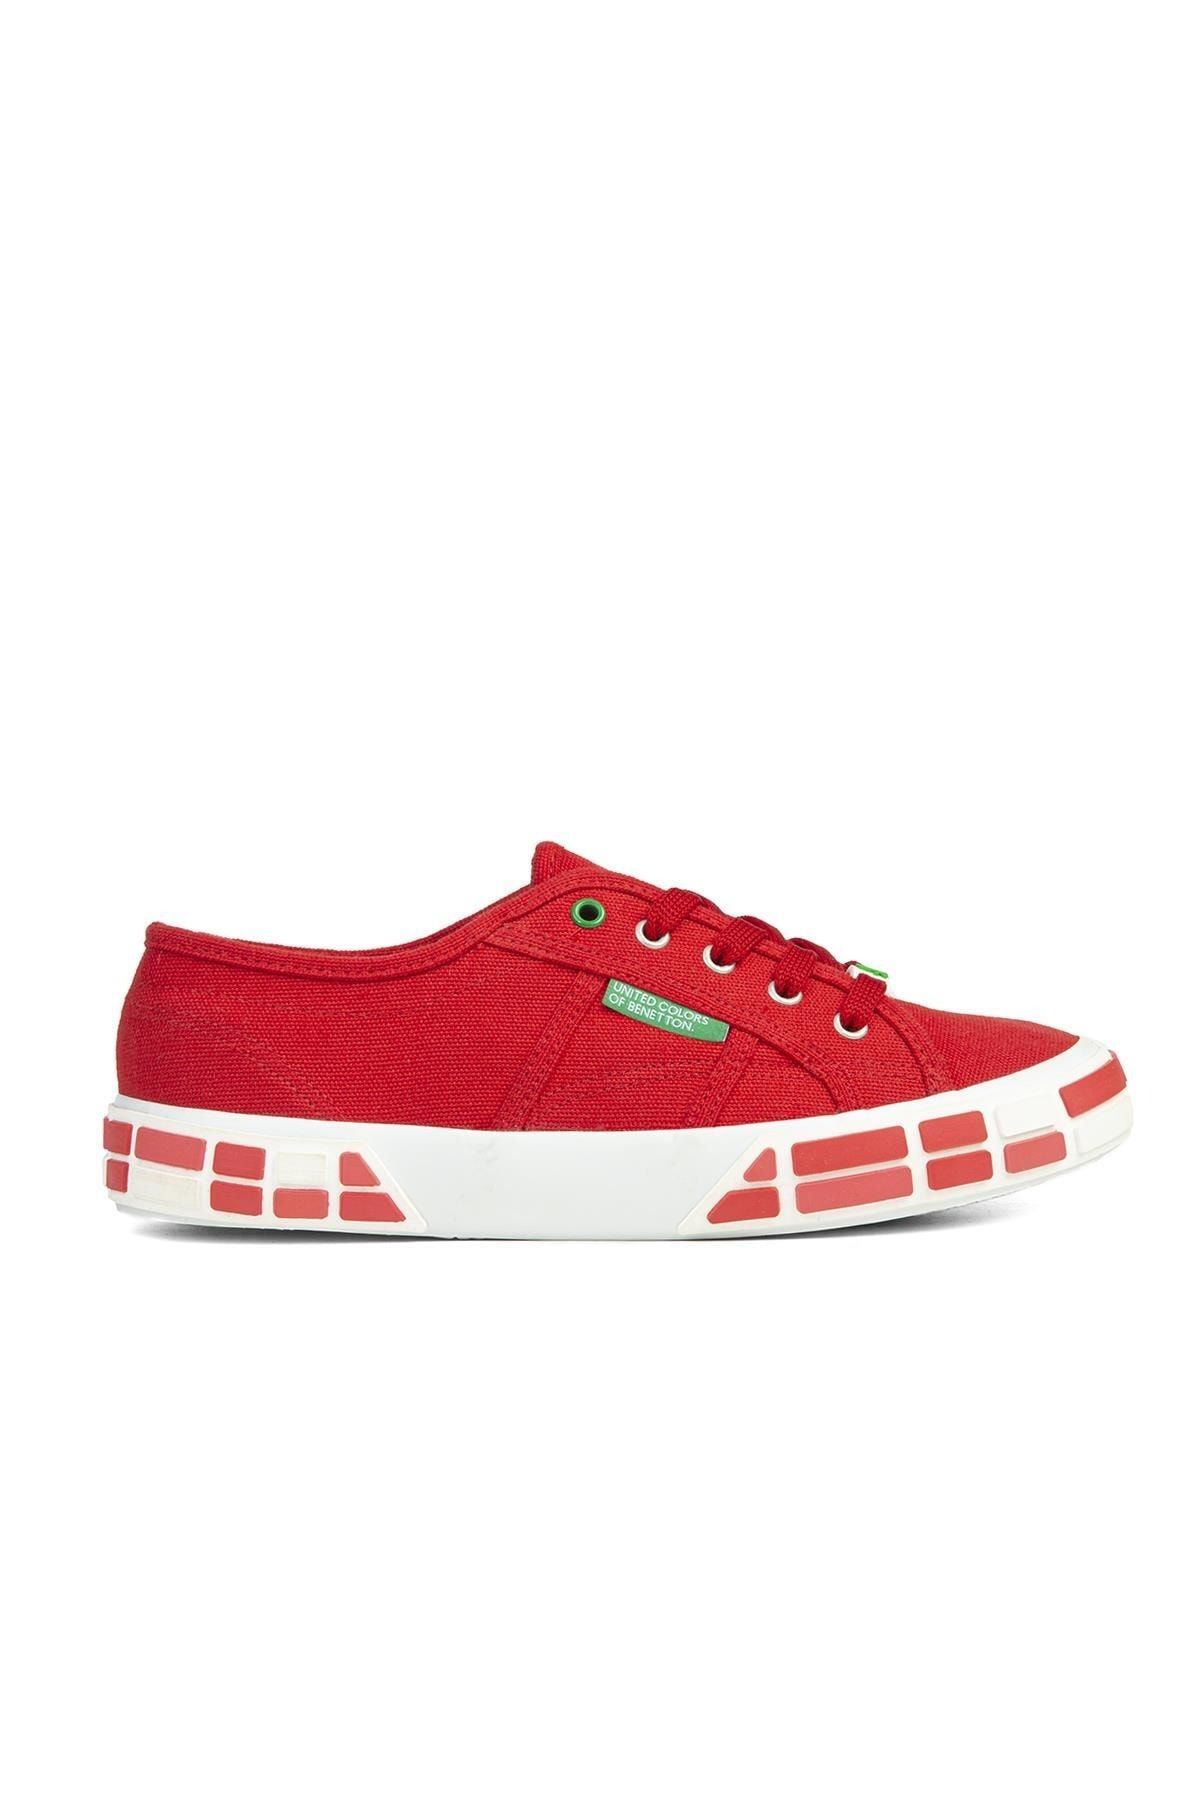 Benetton ® | Bn-30691-3114 Kırmızı - Kadın Spor Ayakkabı